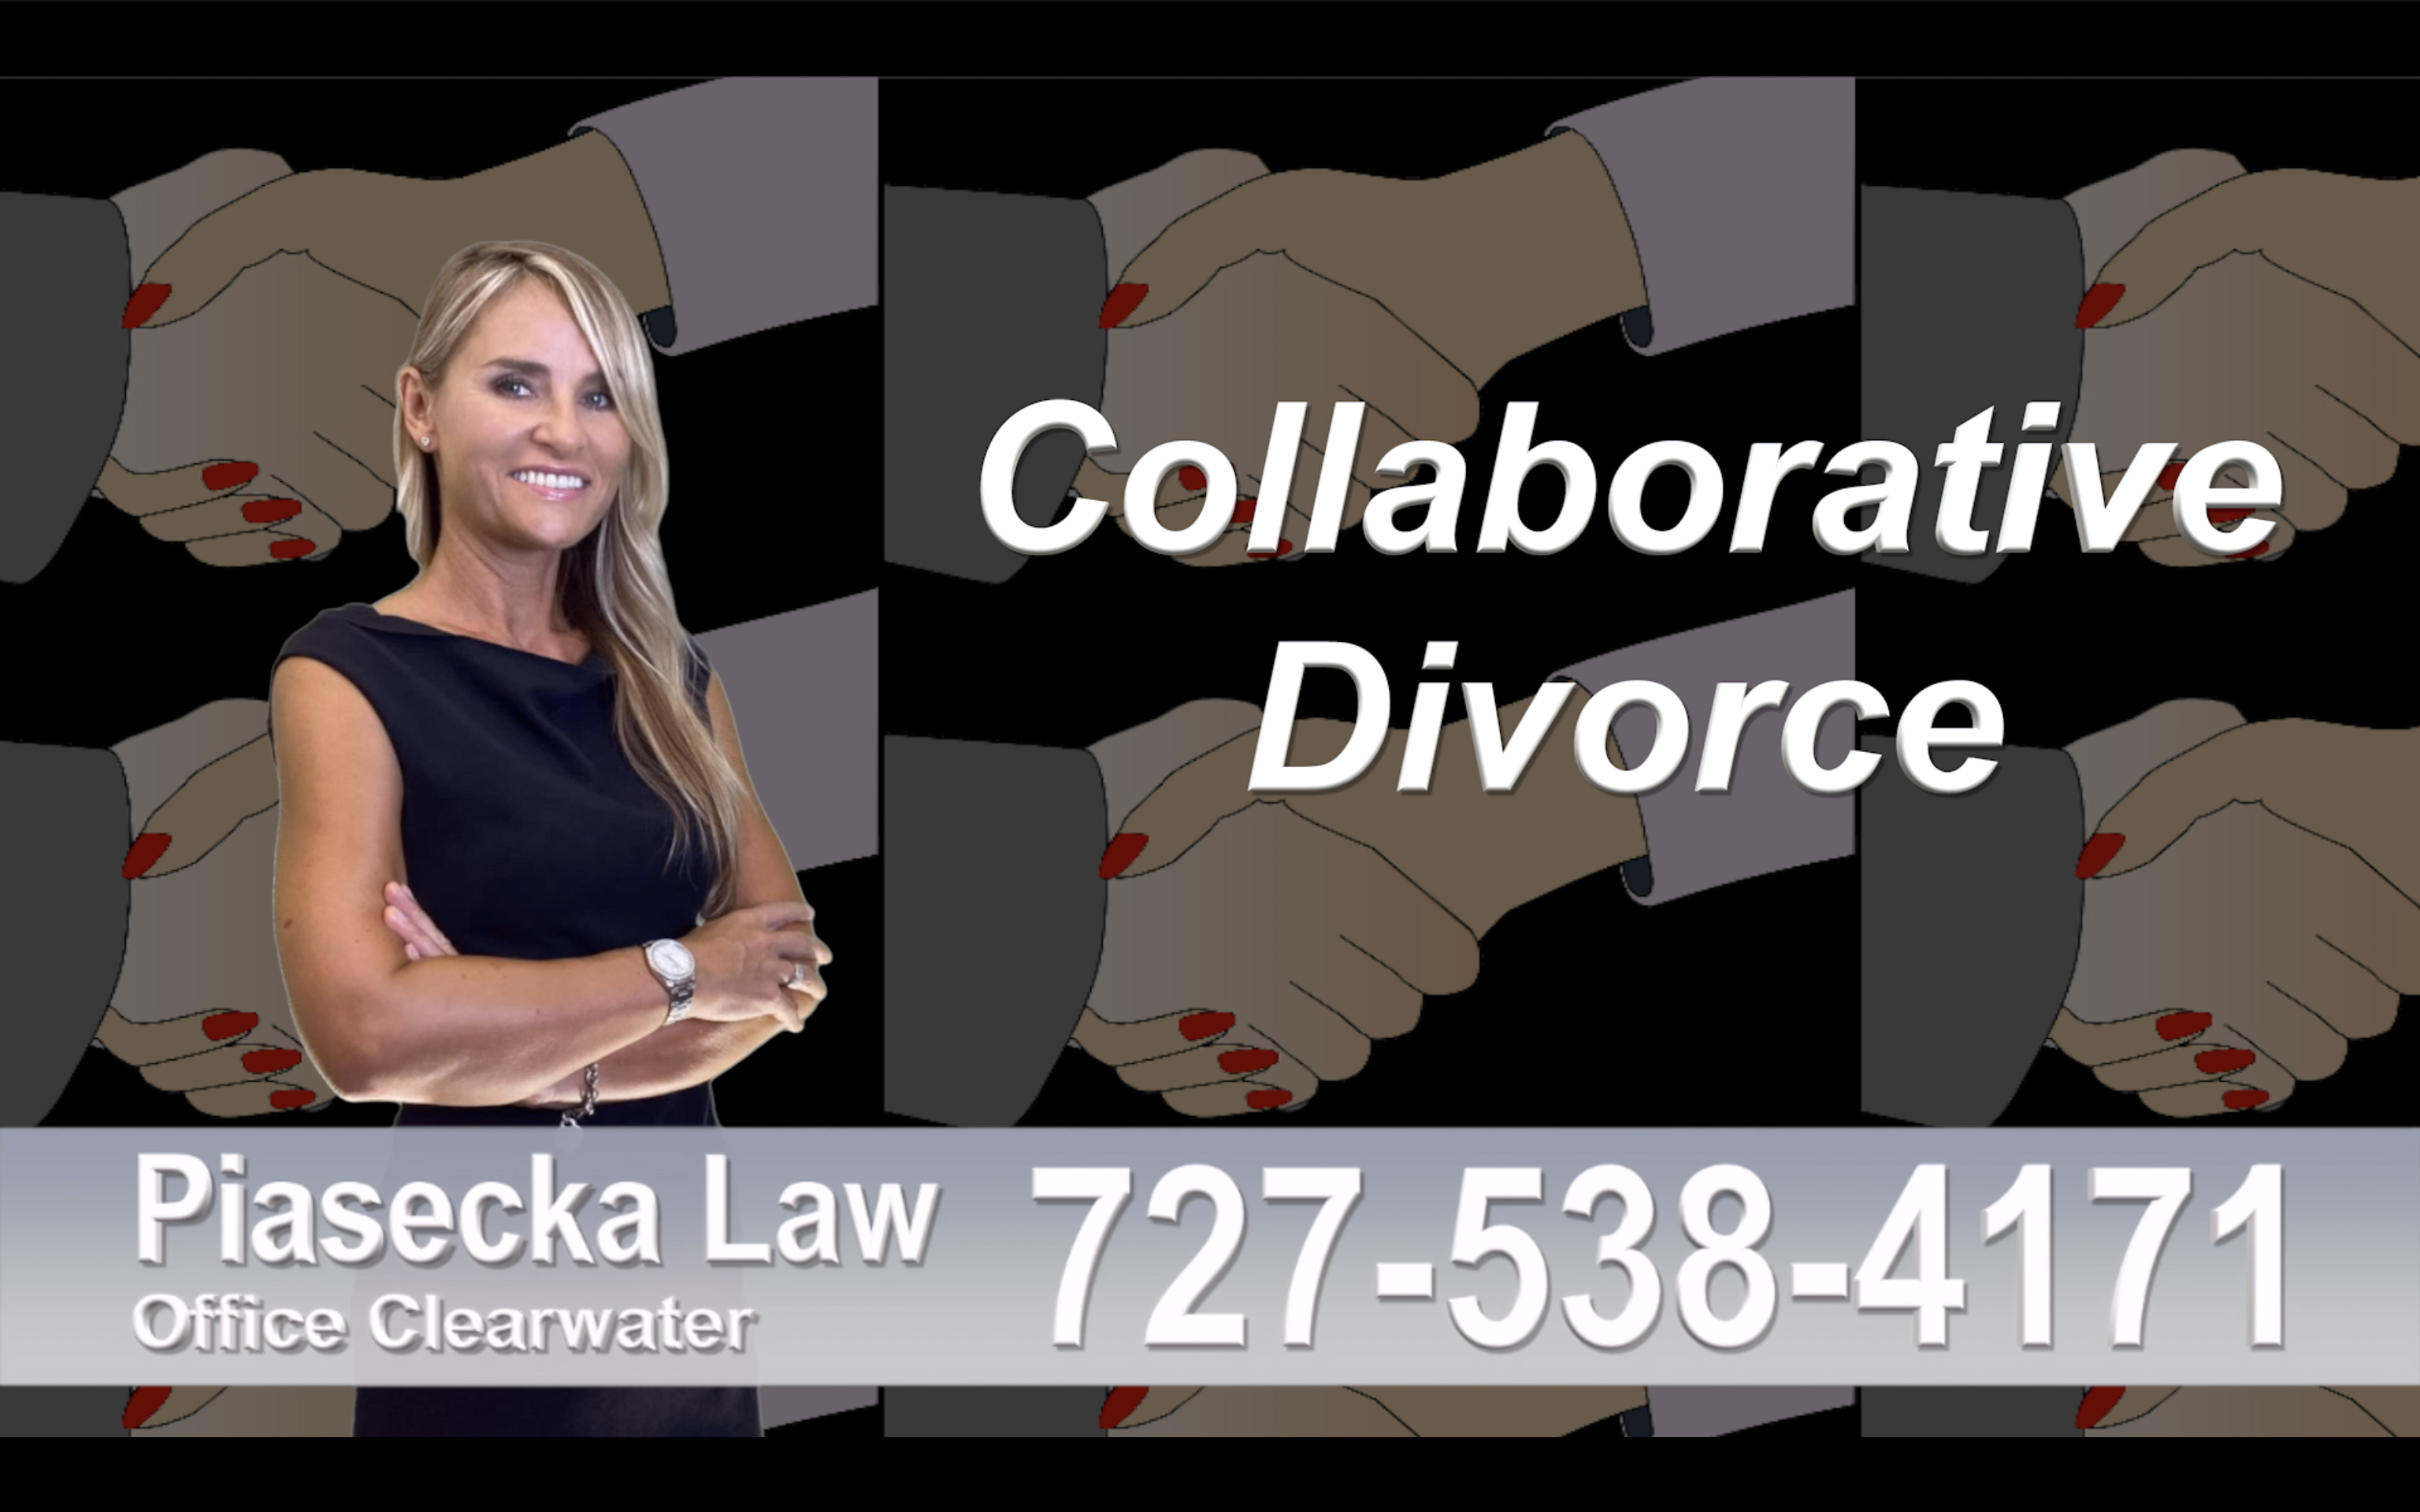 Divorce Immigration St. Petersburg, collaborative-divorce-attorney-agnieszka-piasecka-prawnik-rozwodowy-rozwod-adwokat-najlepszy-best